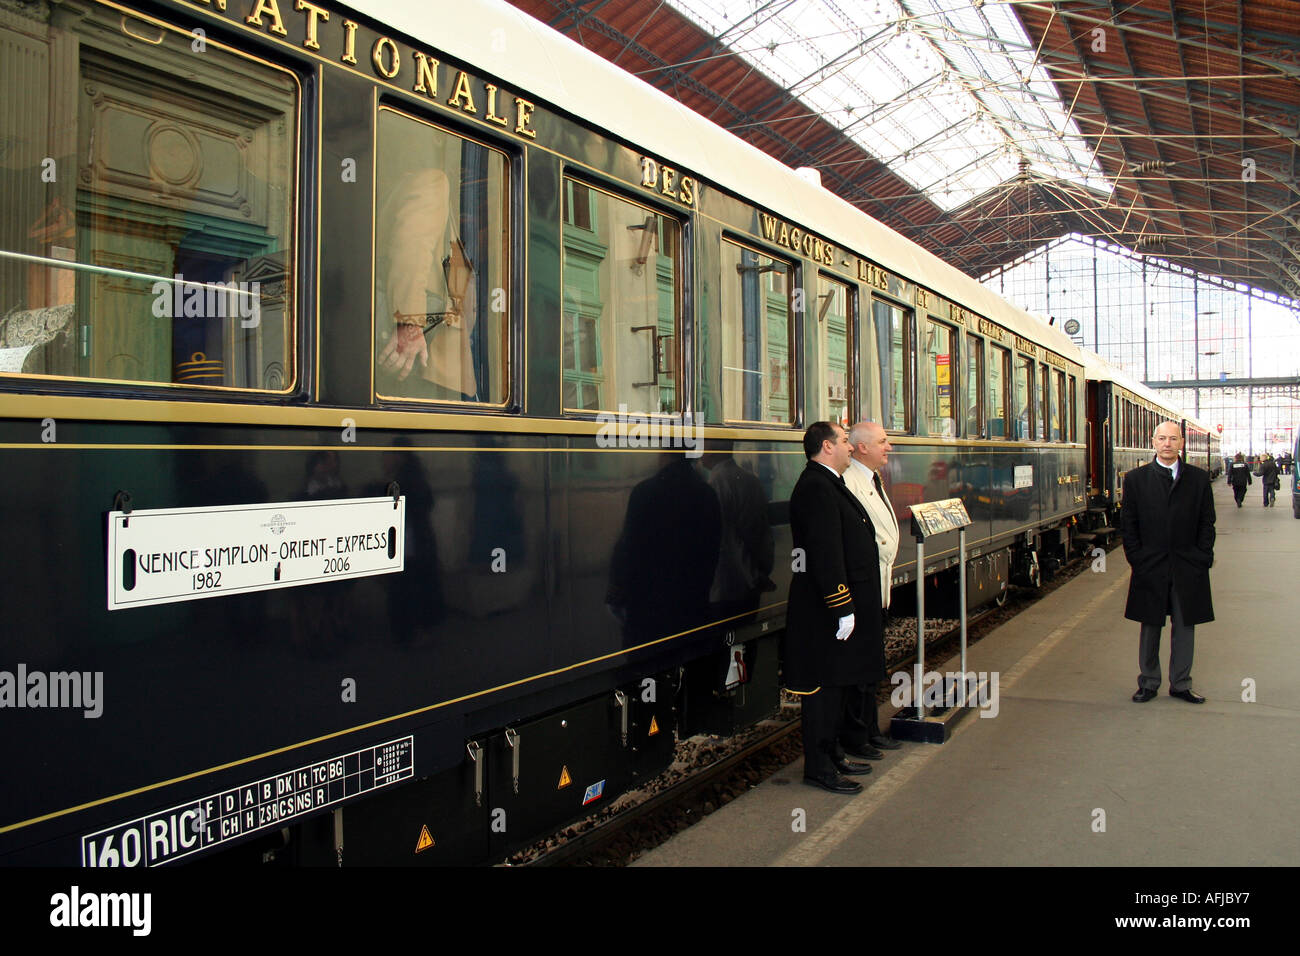 Orient Express treno di lusso a Budapest stazione Keleti Foto Stock